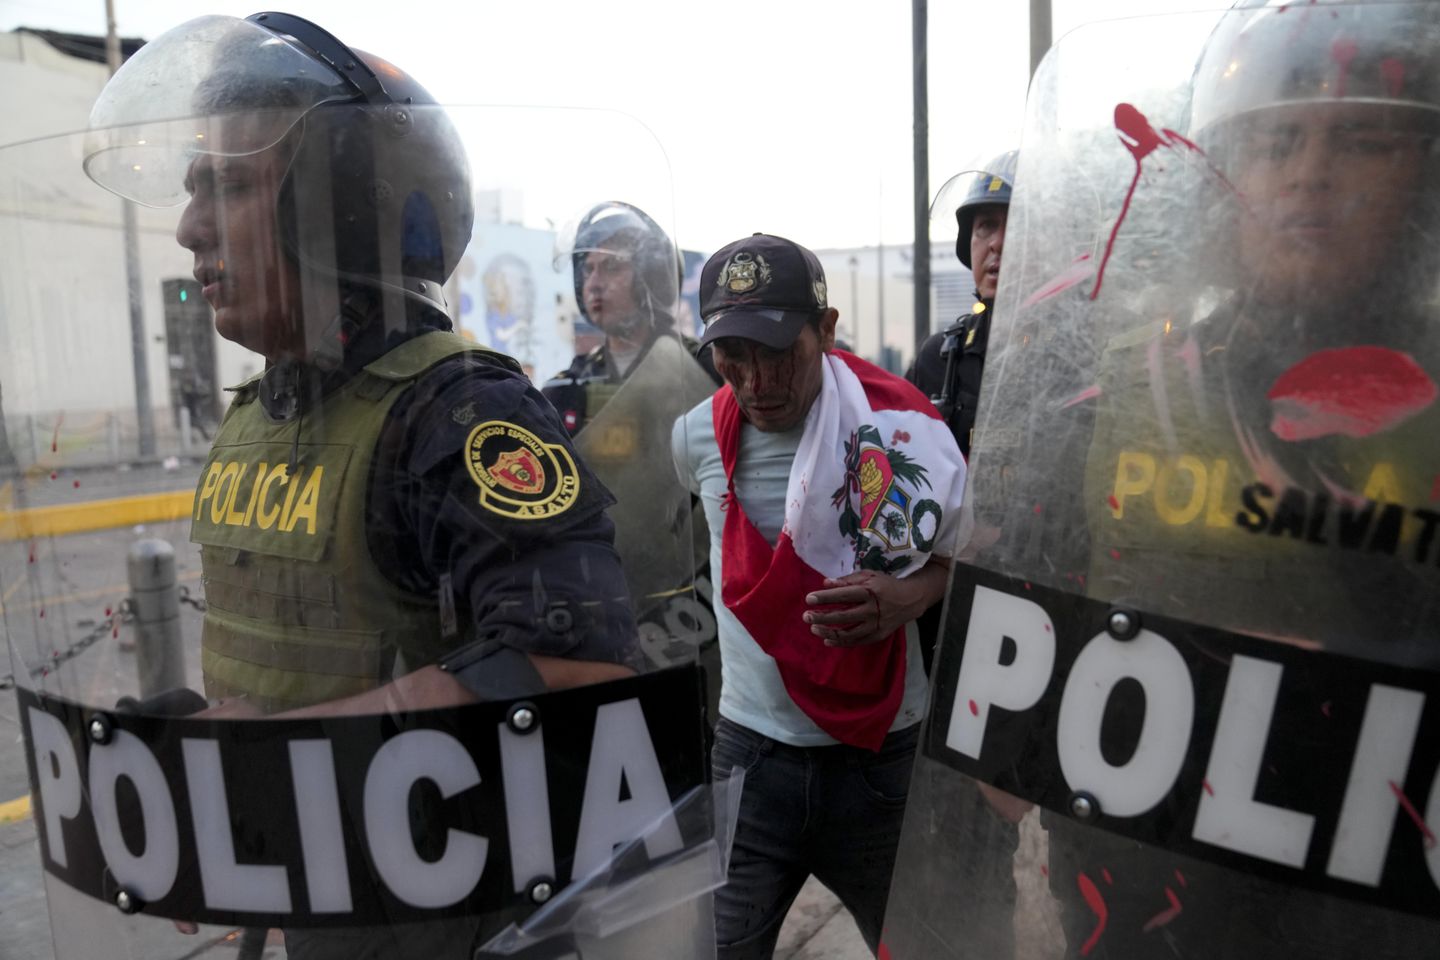 Peru'da cumhurbaşkanı ateşkes çağrısı yapınca protestoculara göz yaşartıcı gaz verildi